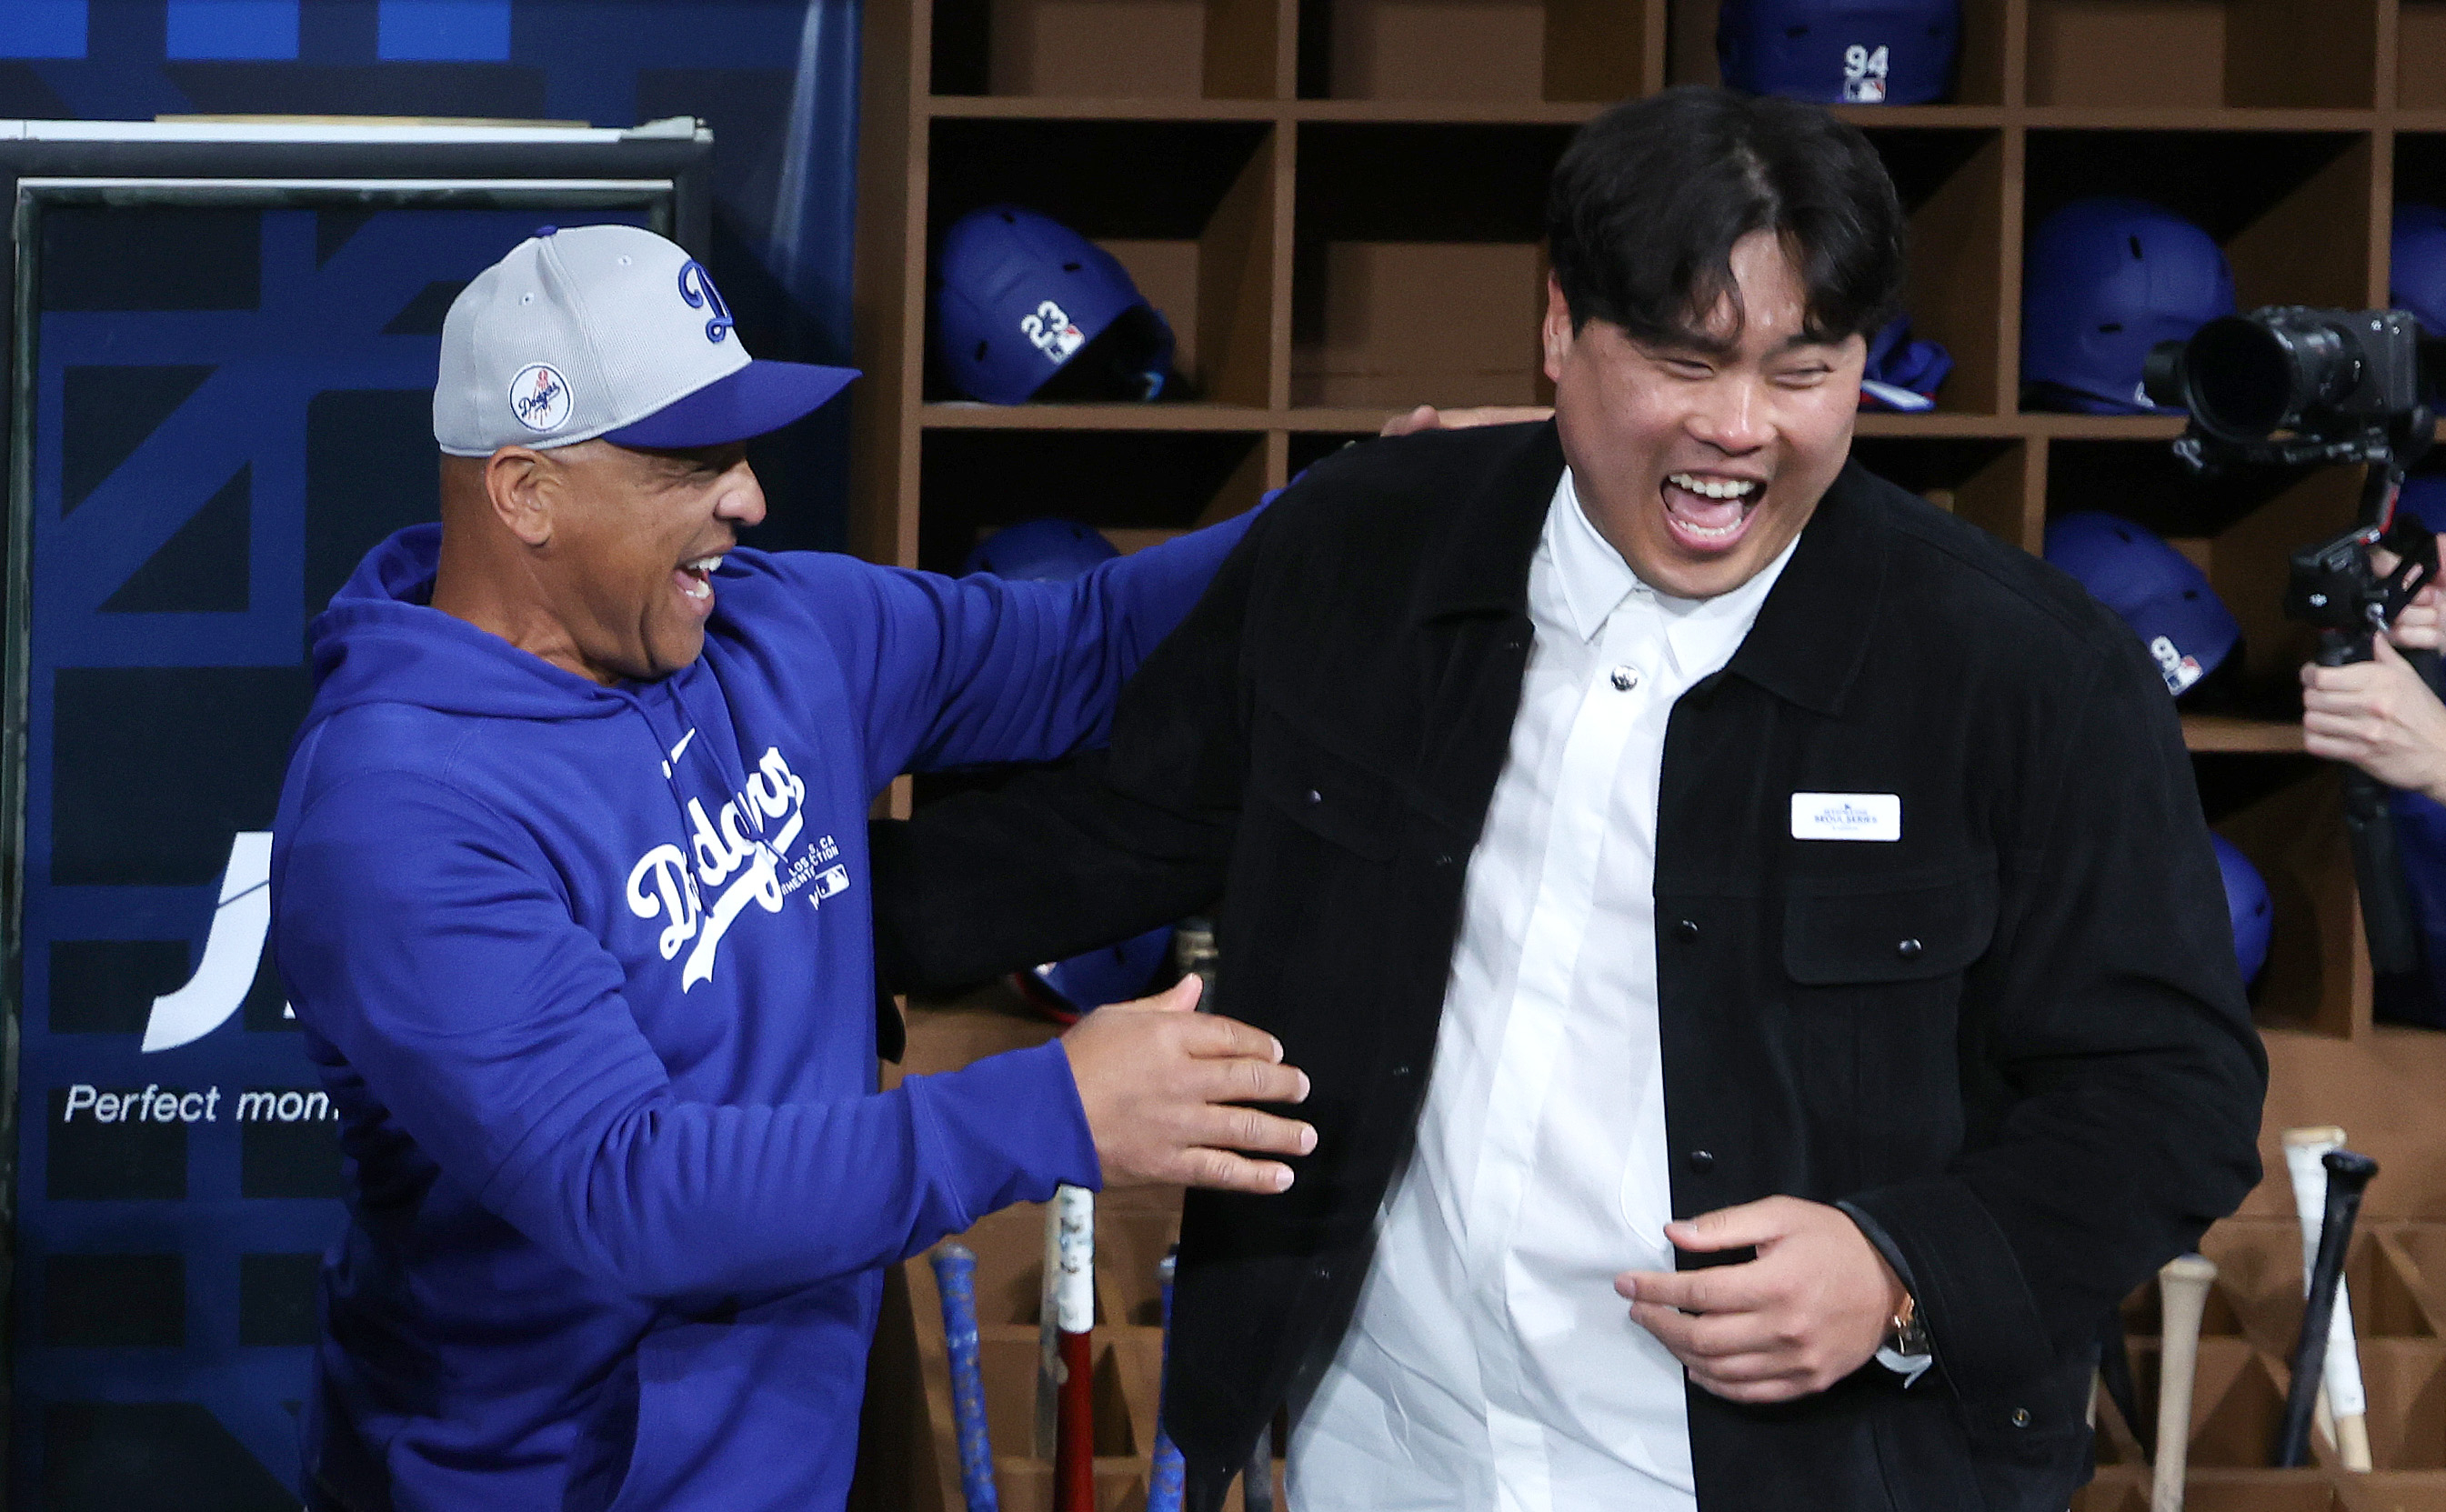 한화 이글스로 복귀한 류현진(오른쪽)이 다저스에서 2019년 MLB 평균자책점 1위(2.32)의 영광을 함께했던 데이브 로버츠 감독을 만나 환하게 웃으며 대화하고 있다.  뉴시스